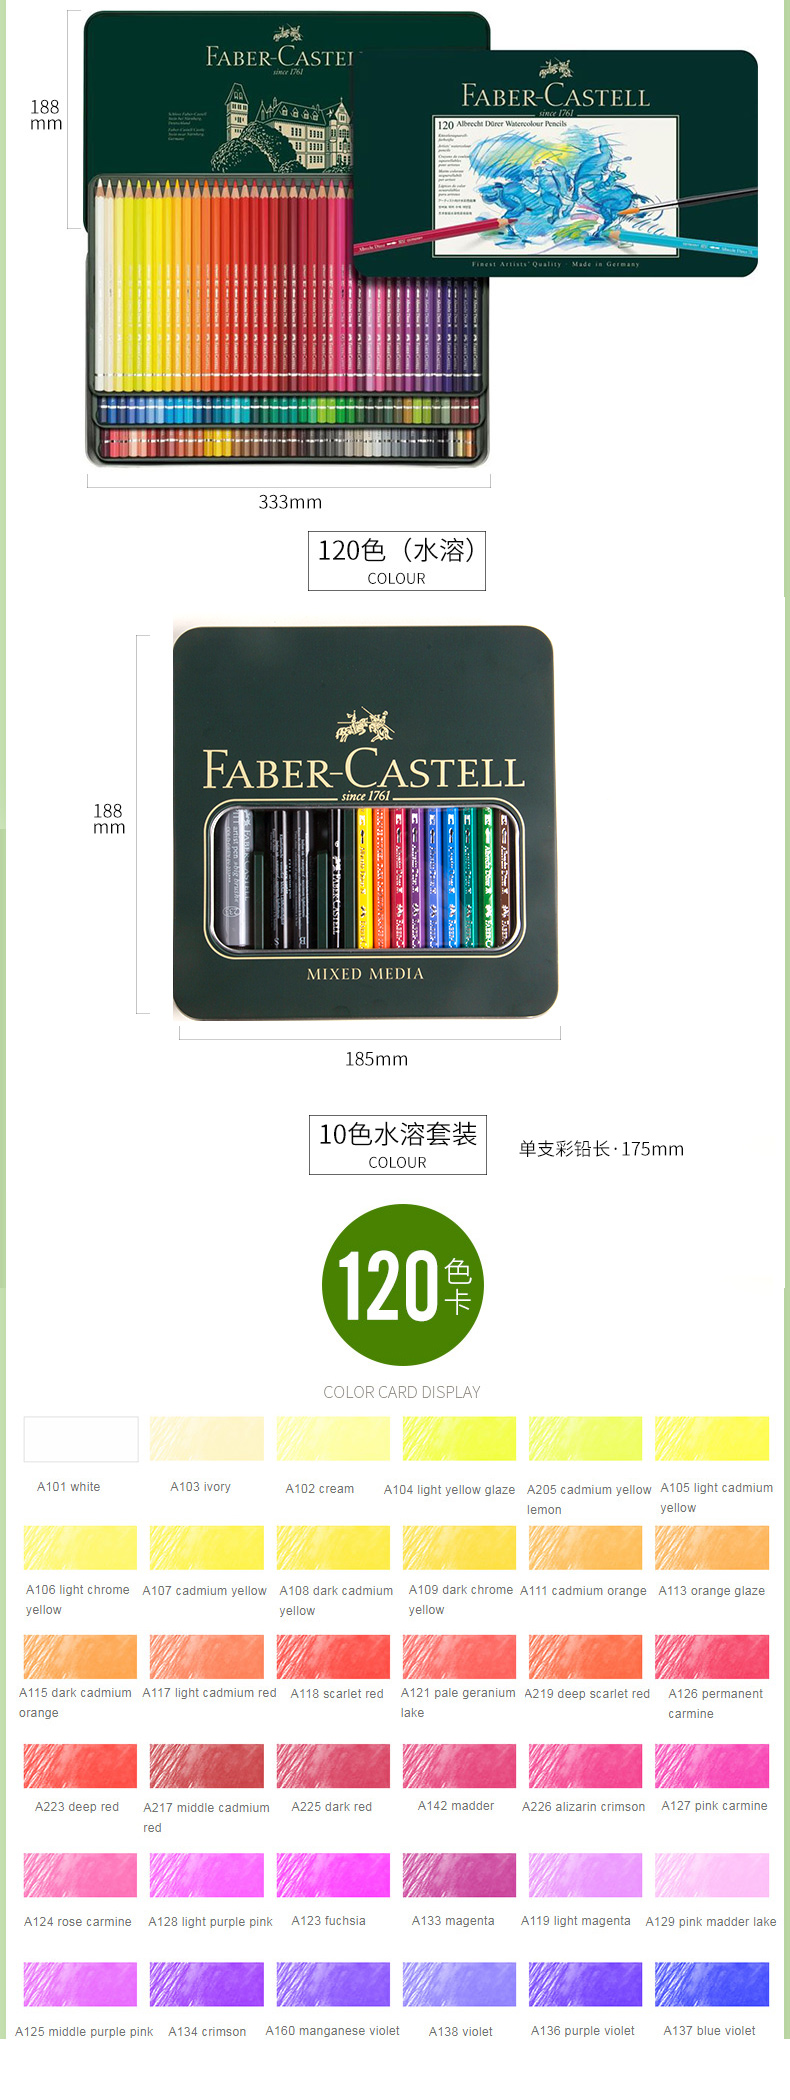 辉柏嘉绿铁盒水溶性彩铅24色36色专业彩铅笔手绘画笔60色120色成人